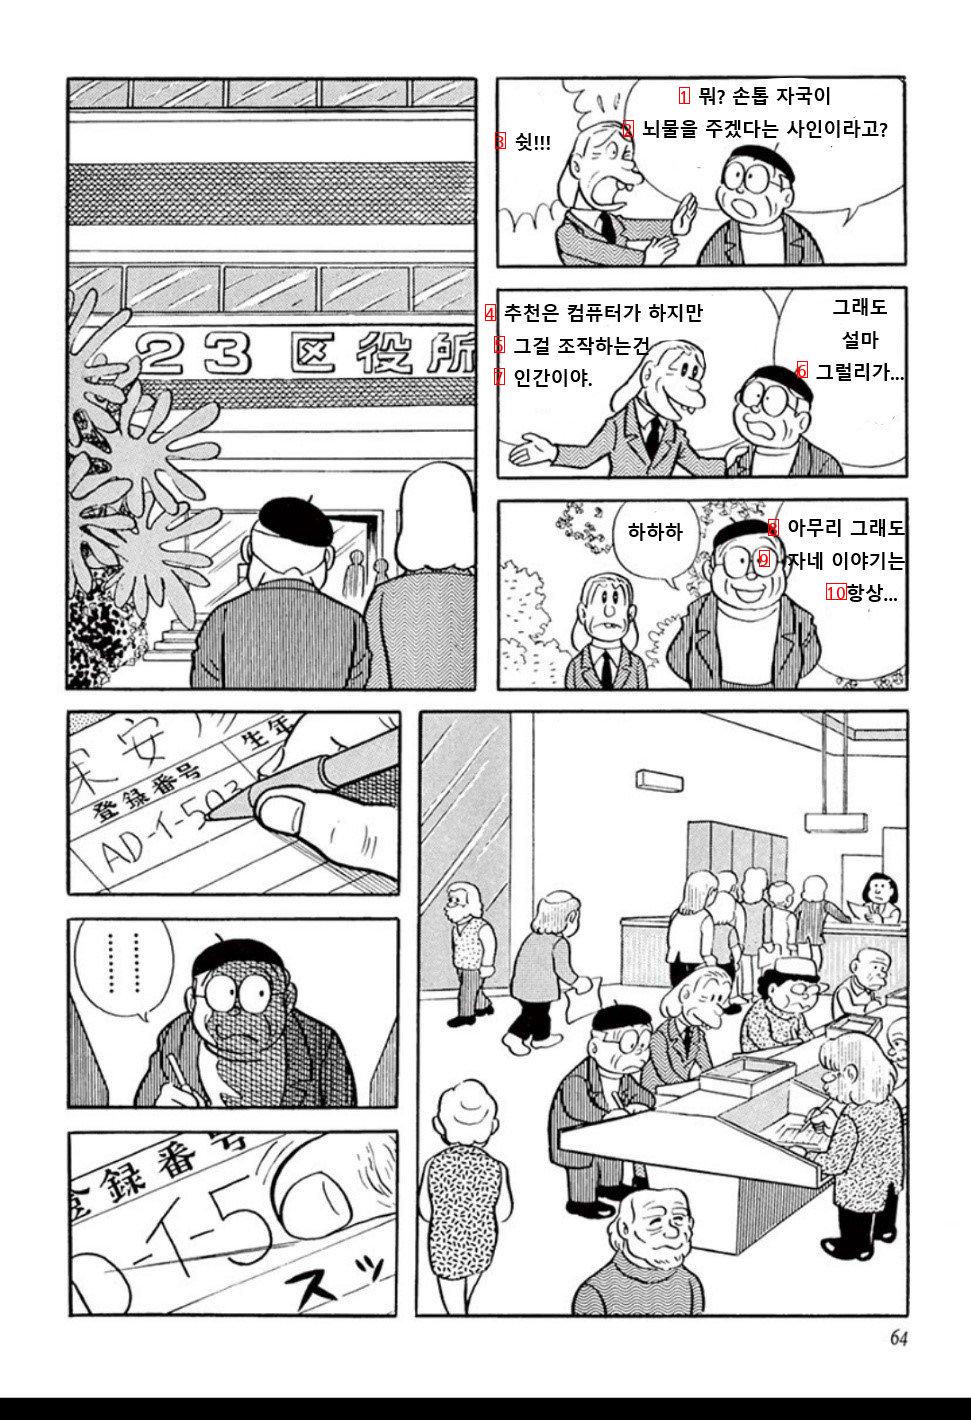 도라에몽 작가가 73년에 그린 초고령사회 만화